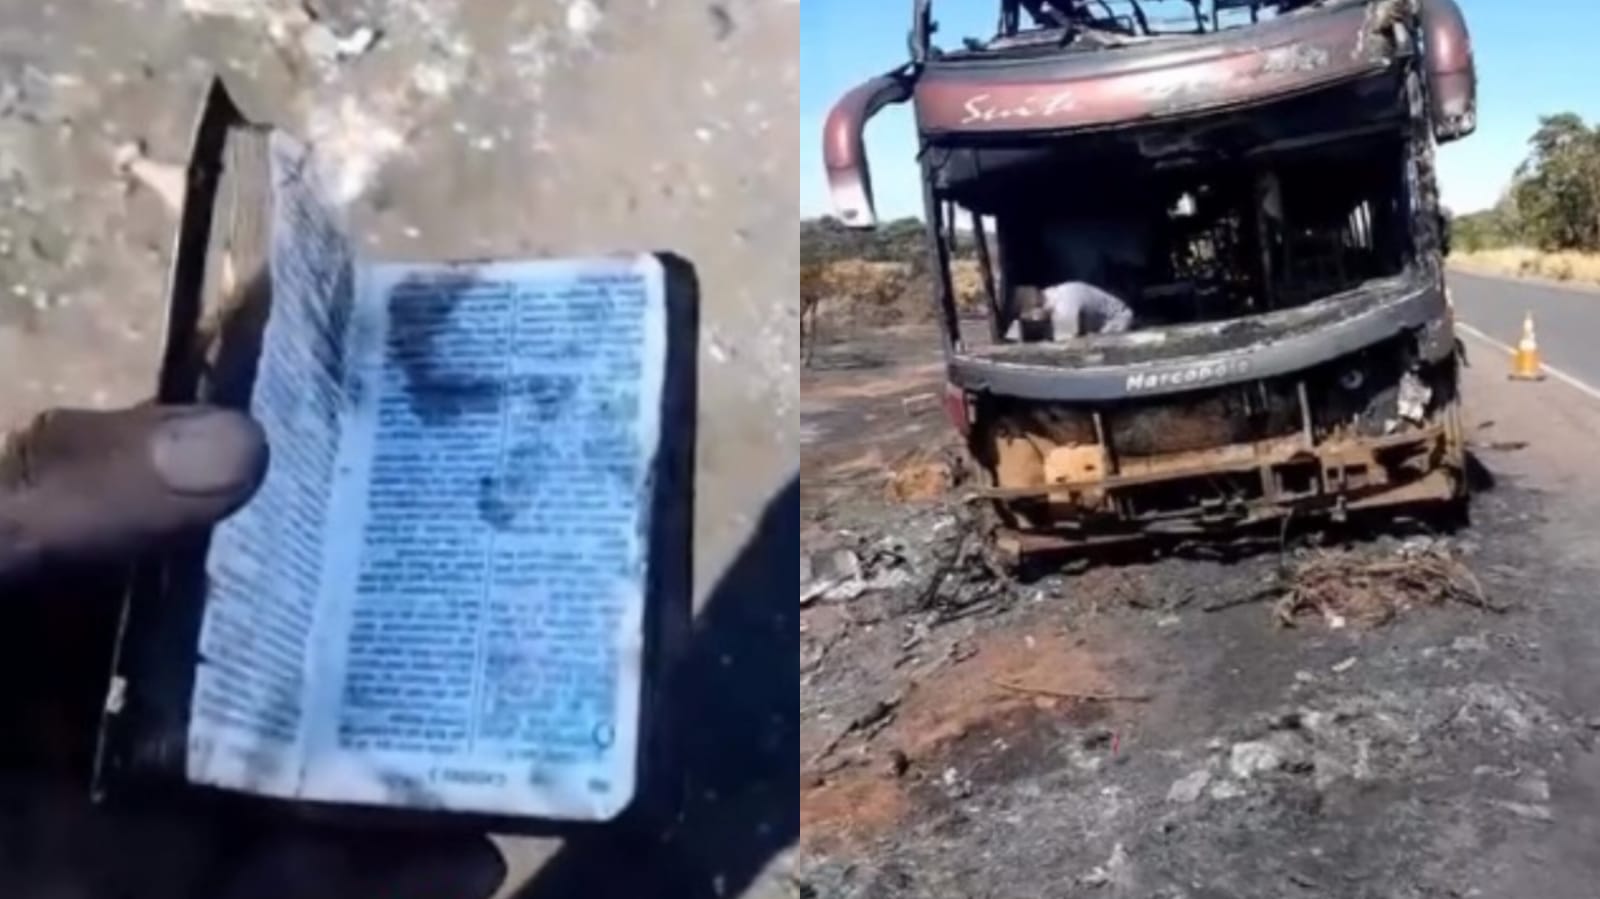 Bíblia é encontrada intacta após incêndio destruir ônibus no MS: “É coisa de Deus”